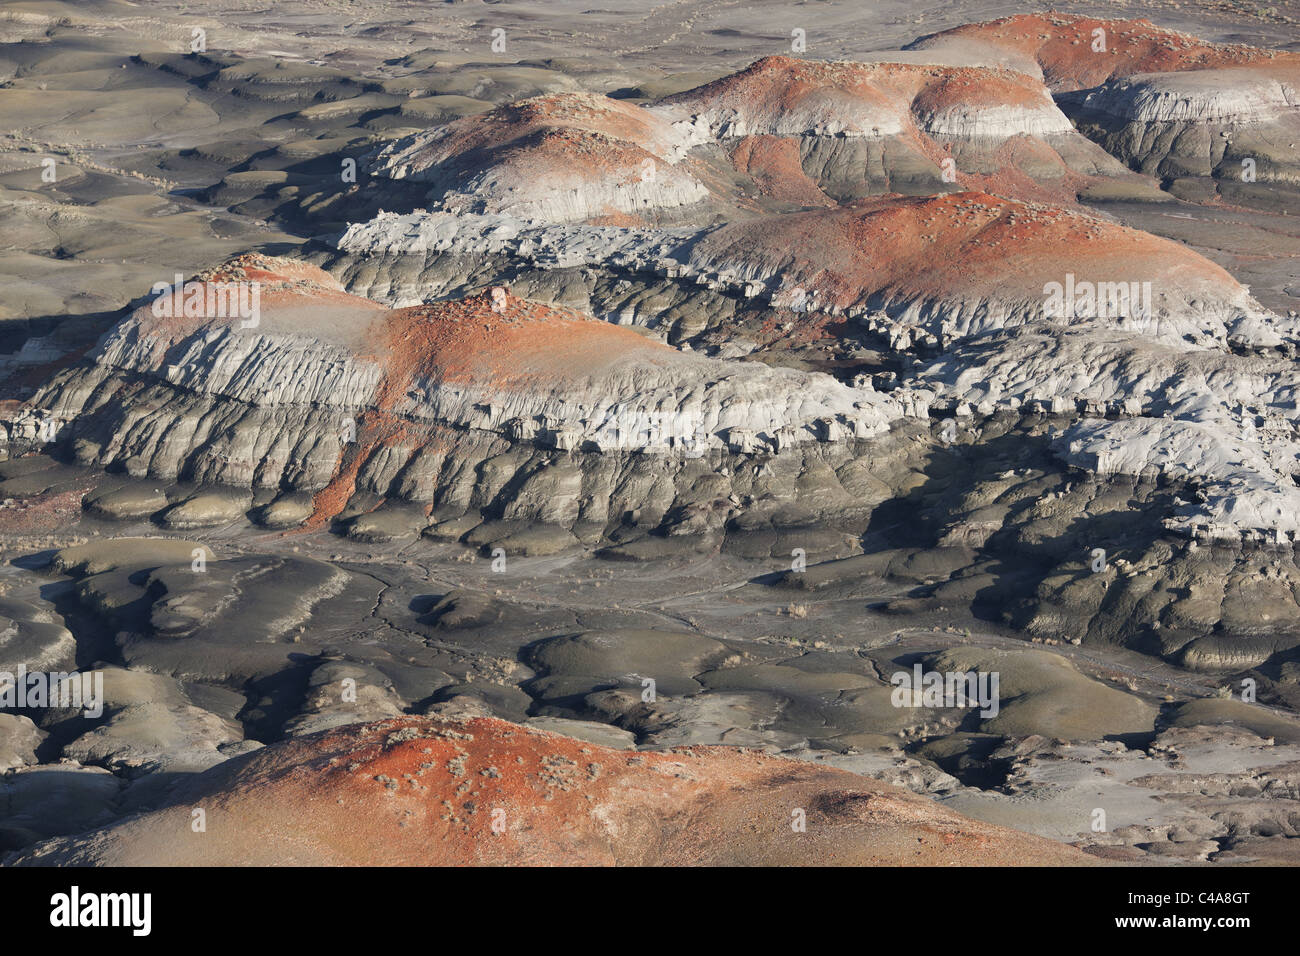 LUFTAUFNAHME. Badlands von Sedimentgestein mit bunten Schichten. Bisti De-Na-Zin Wilderness Area, San Juan County, New Mexico, USA. Stockfoto